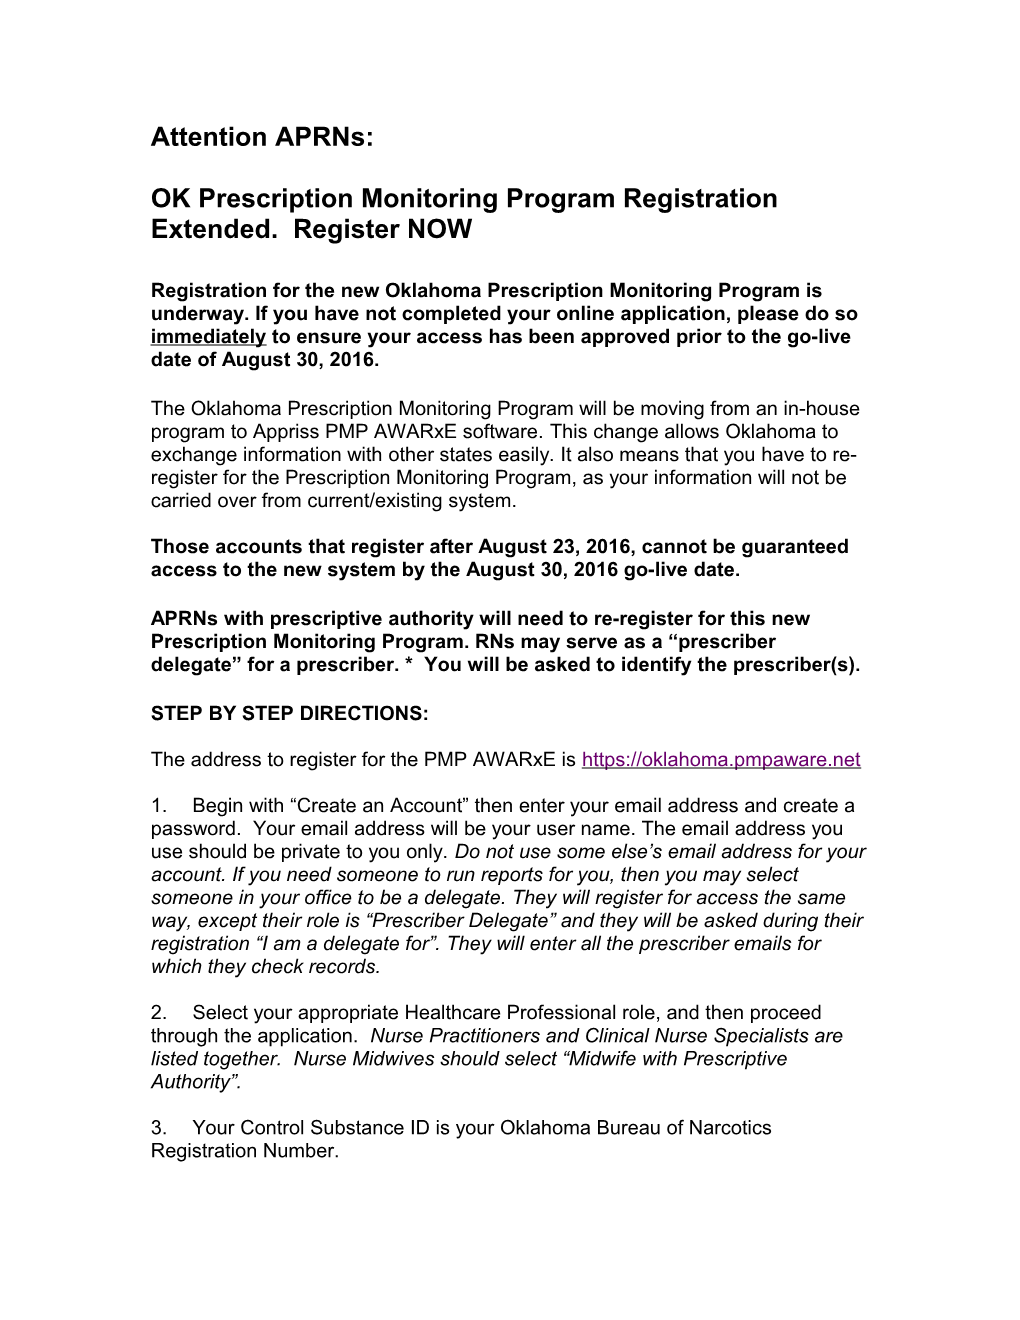 OK Prescription Monitoring Program Registration Extended. Register NOW